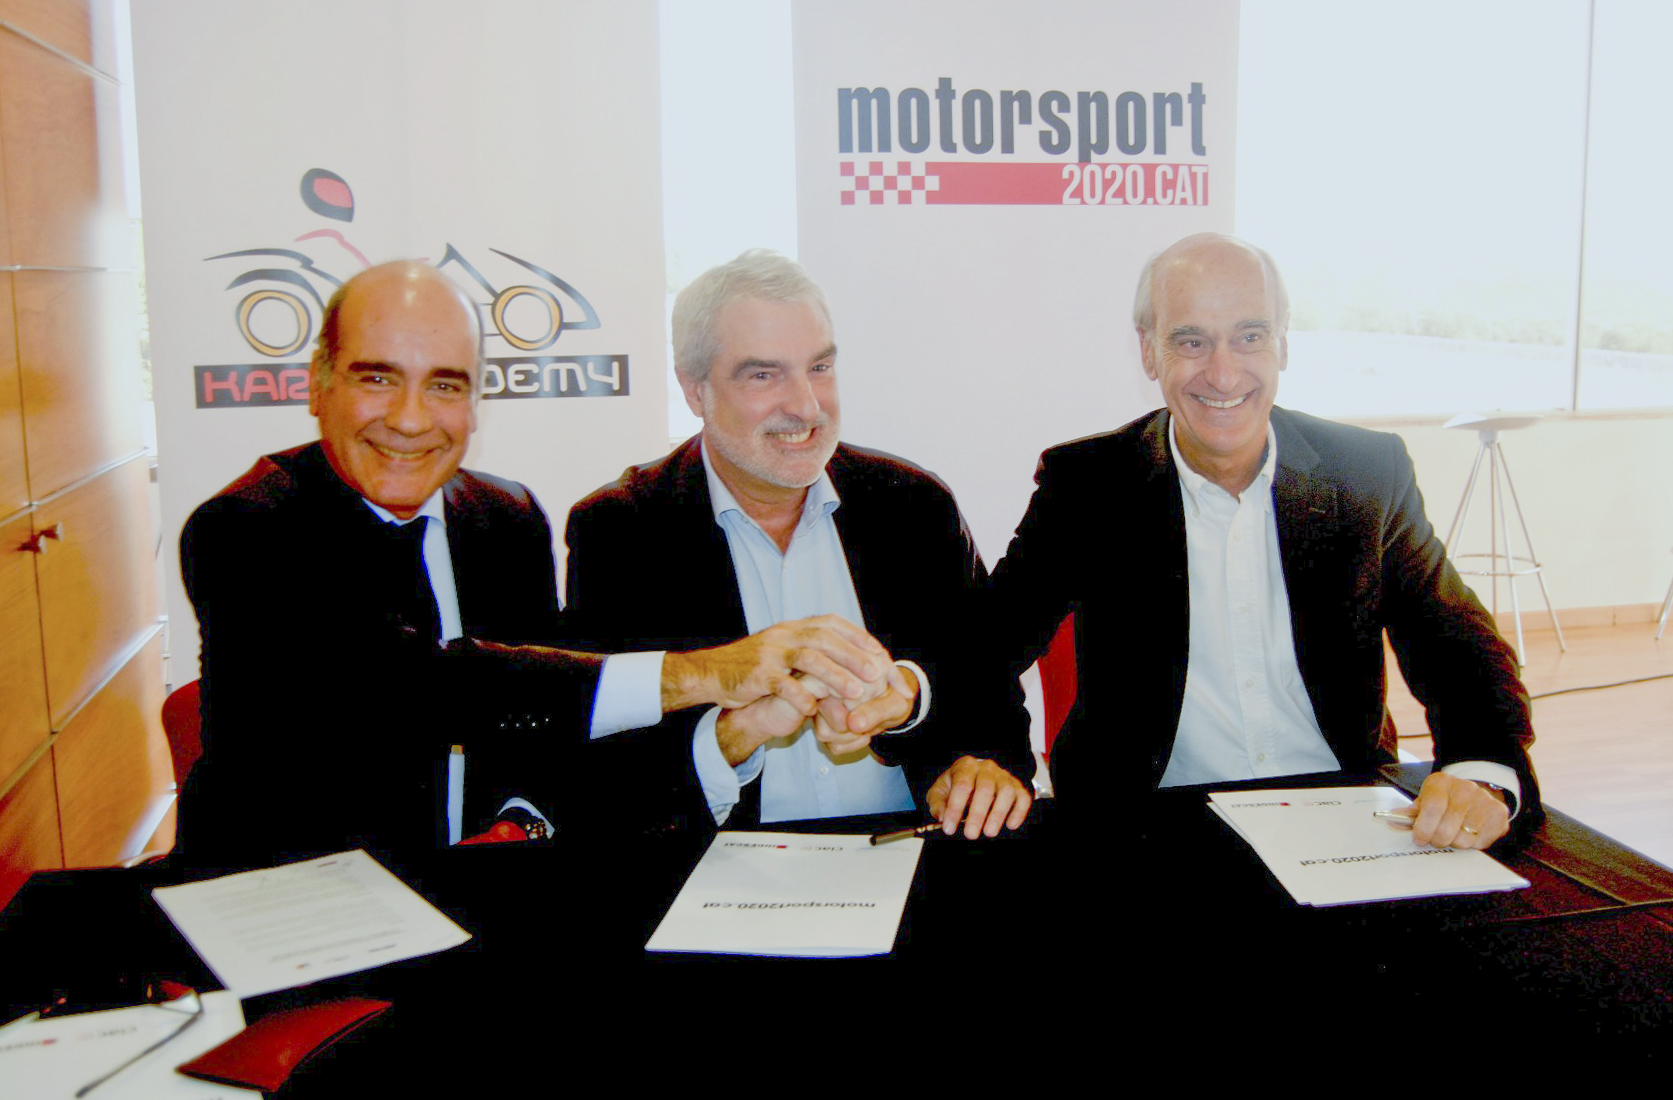 D'esquerra a dreta, Carles Grasas (STA), Joan Ollé (federació catalana) i Vicenç Aguilera, president del Circuit